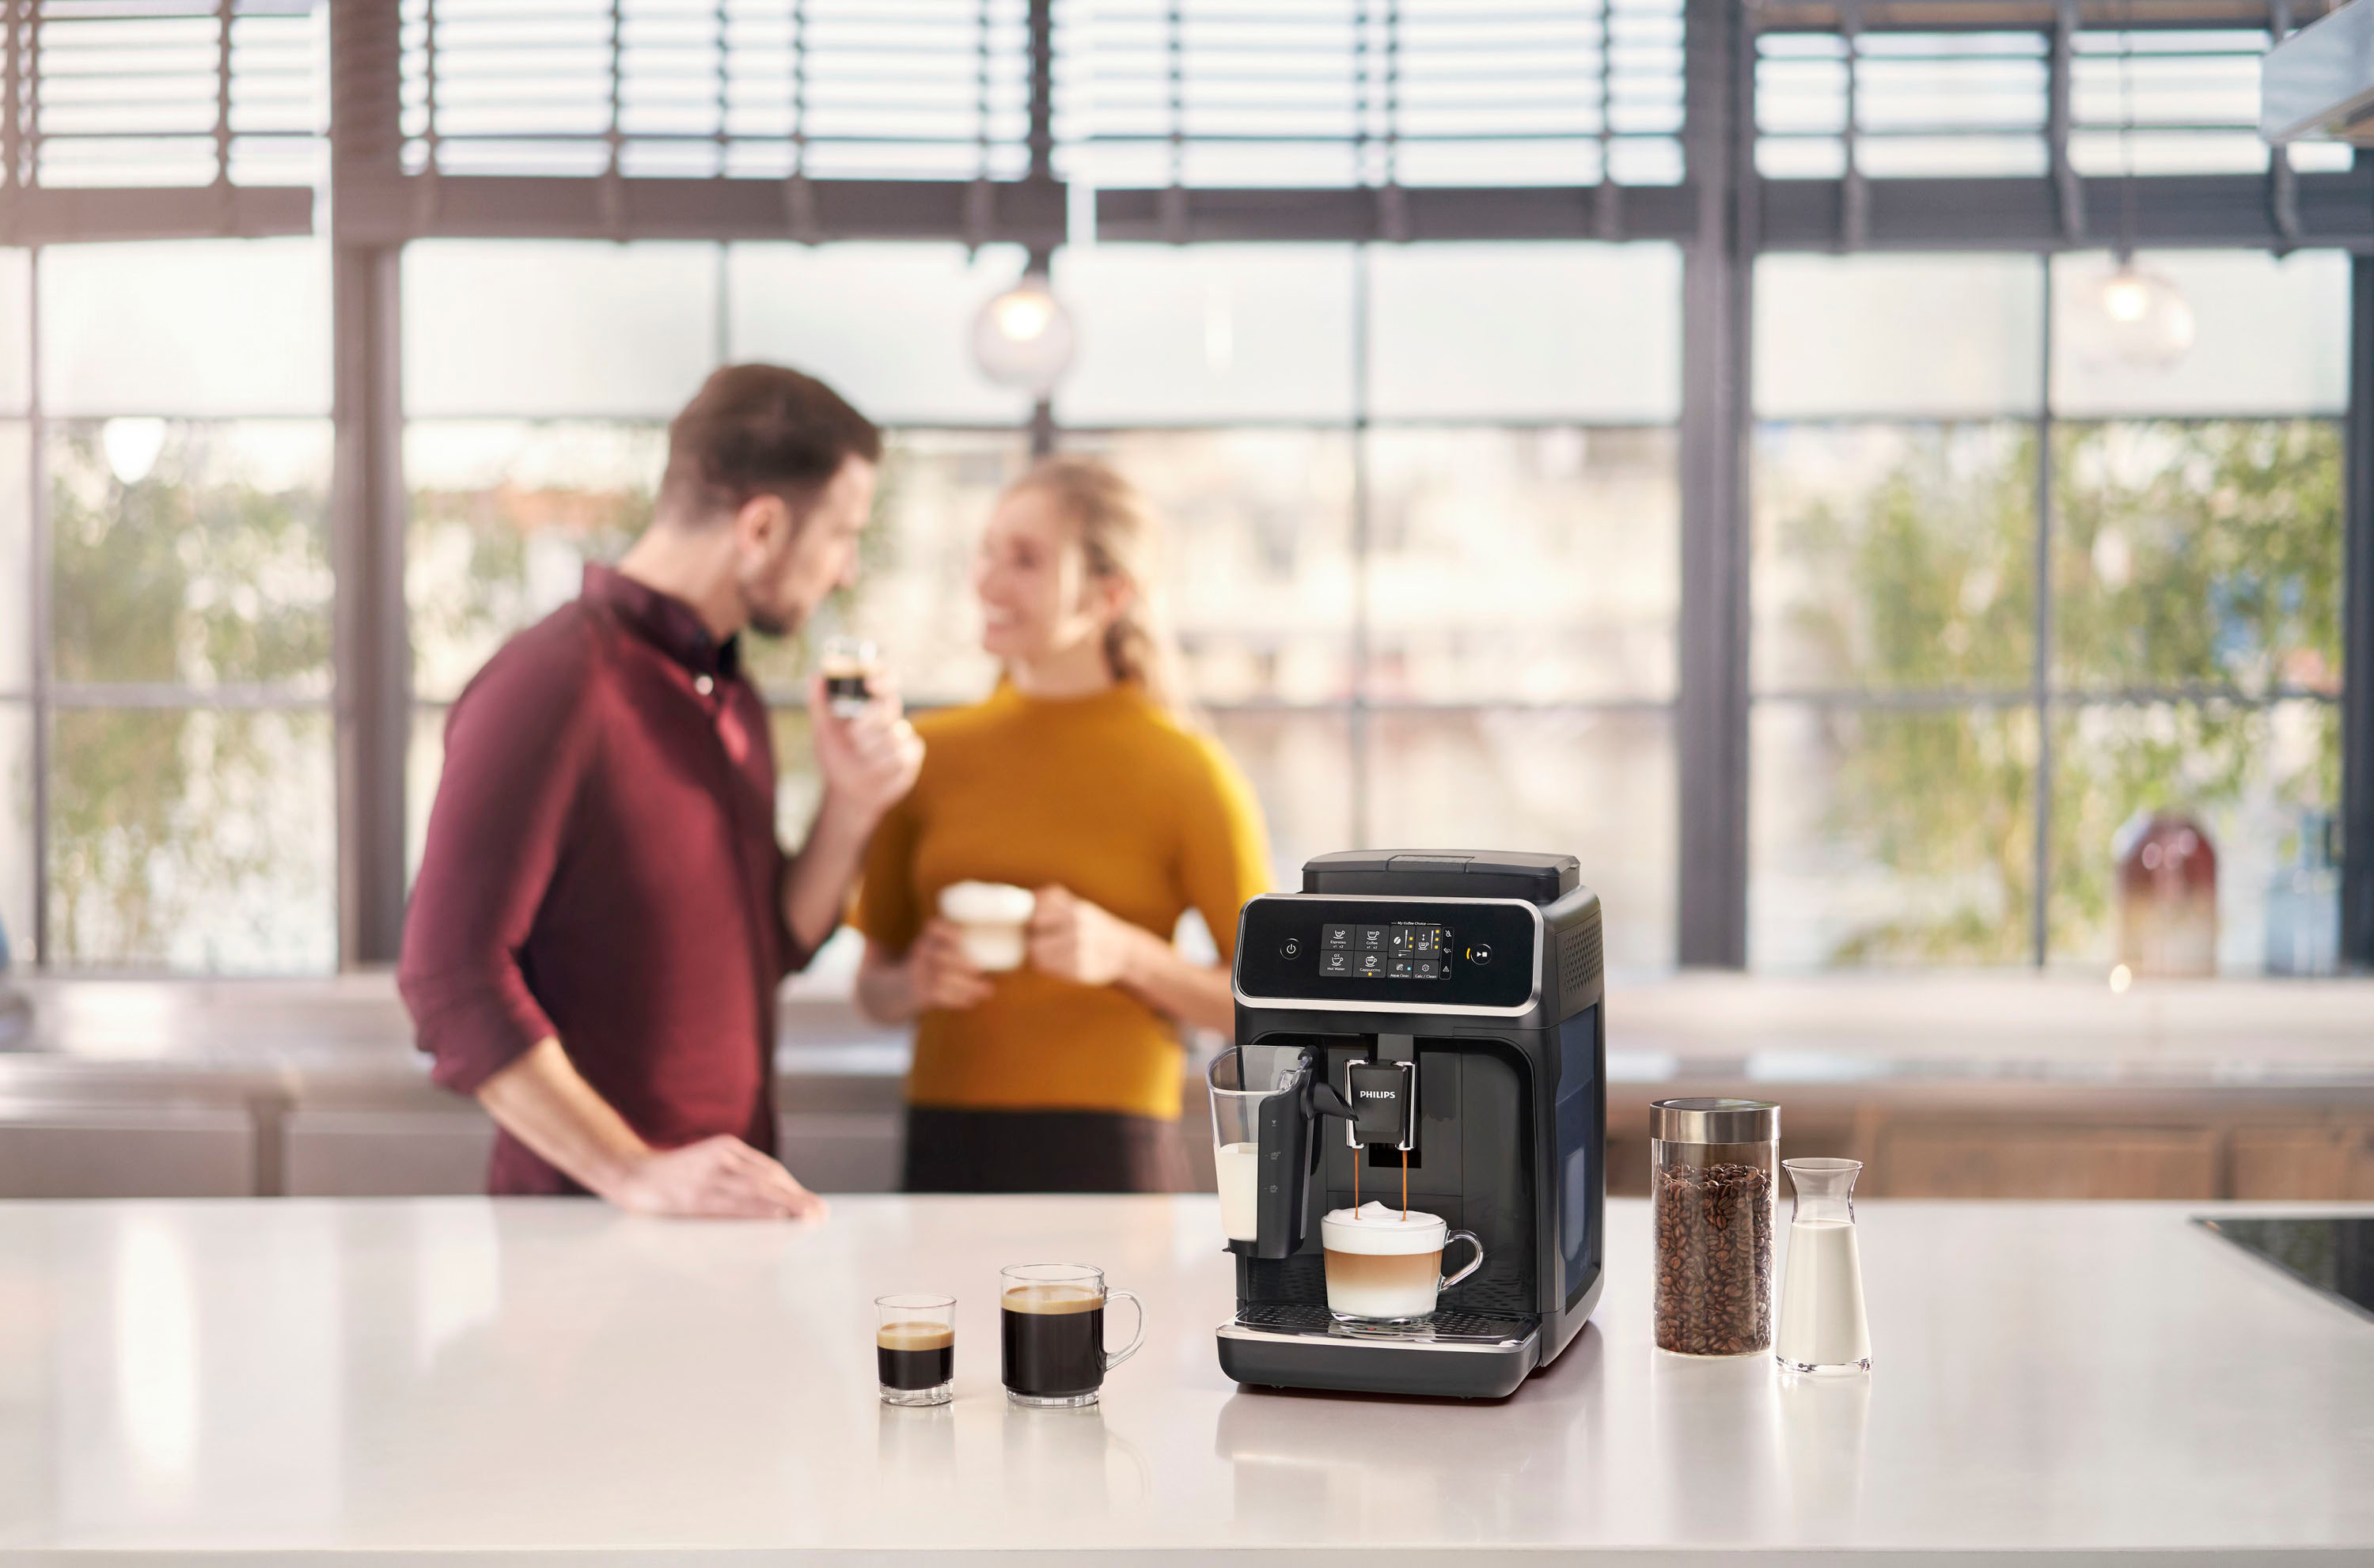 Cafetera espresso superautomática Philips serie 5400 LatteGo, 12